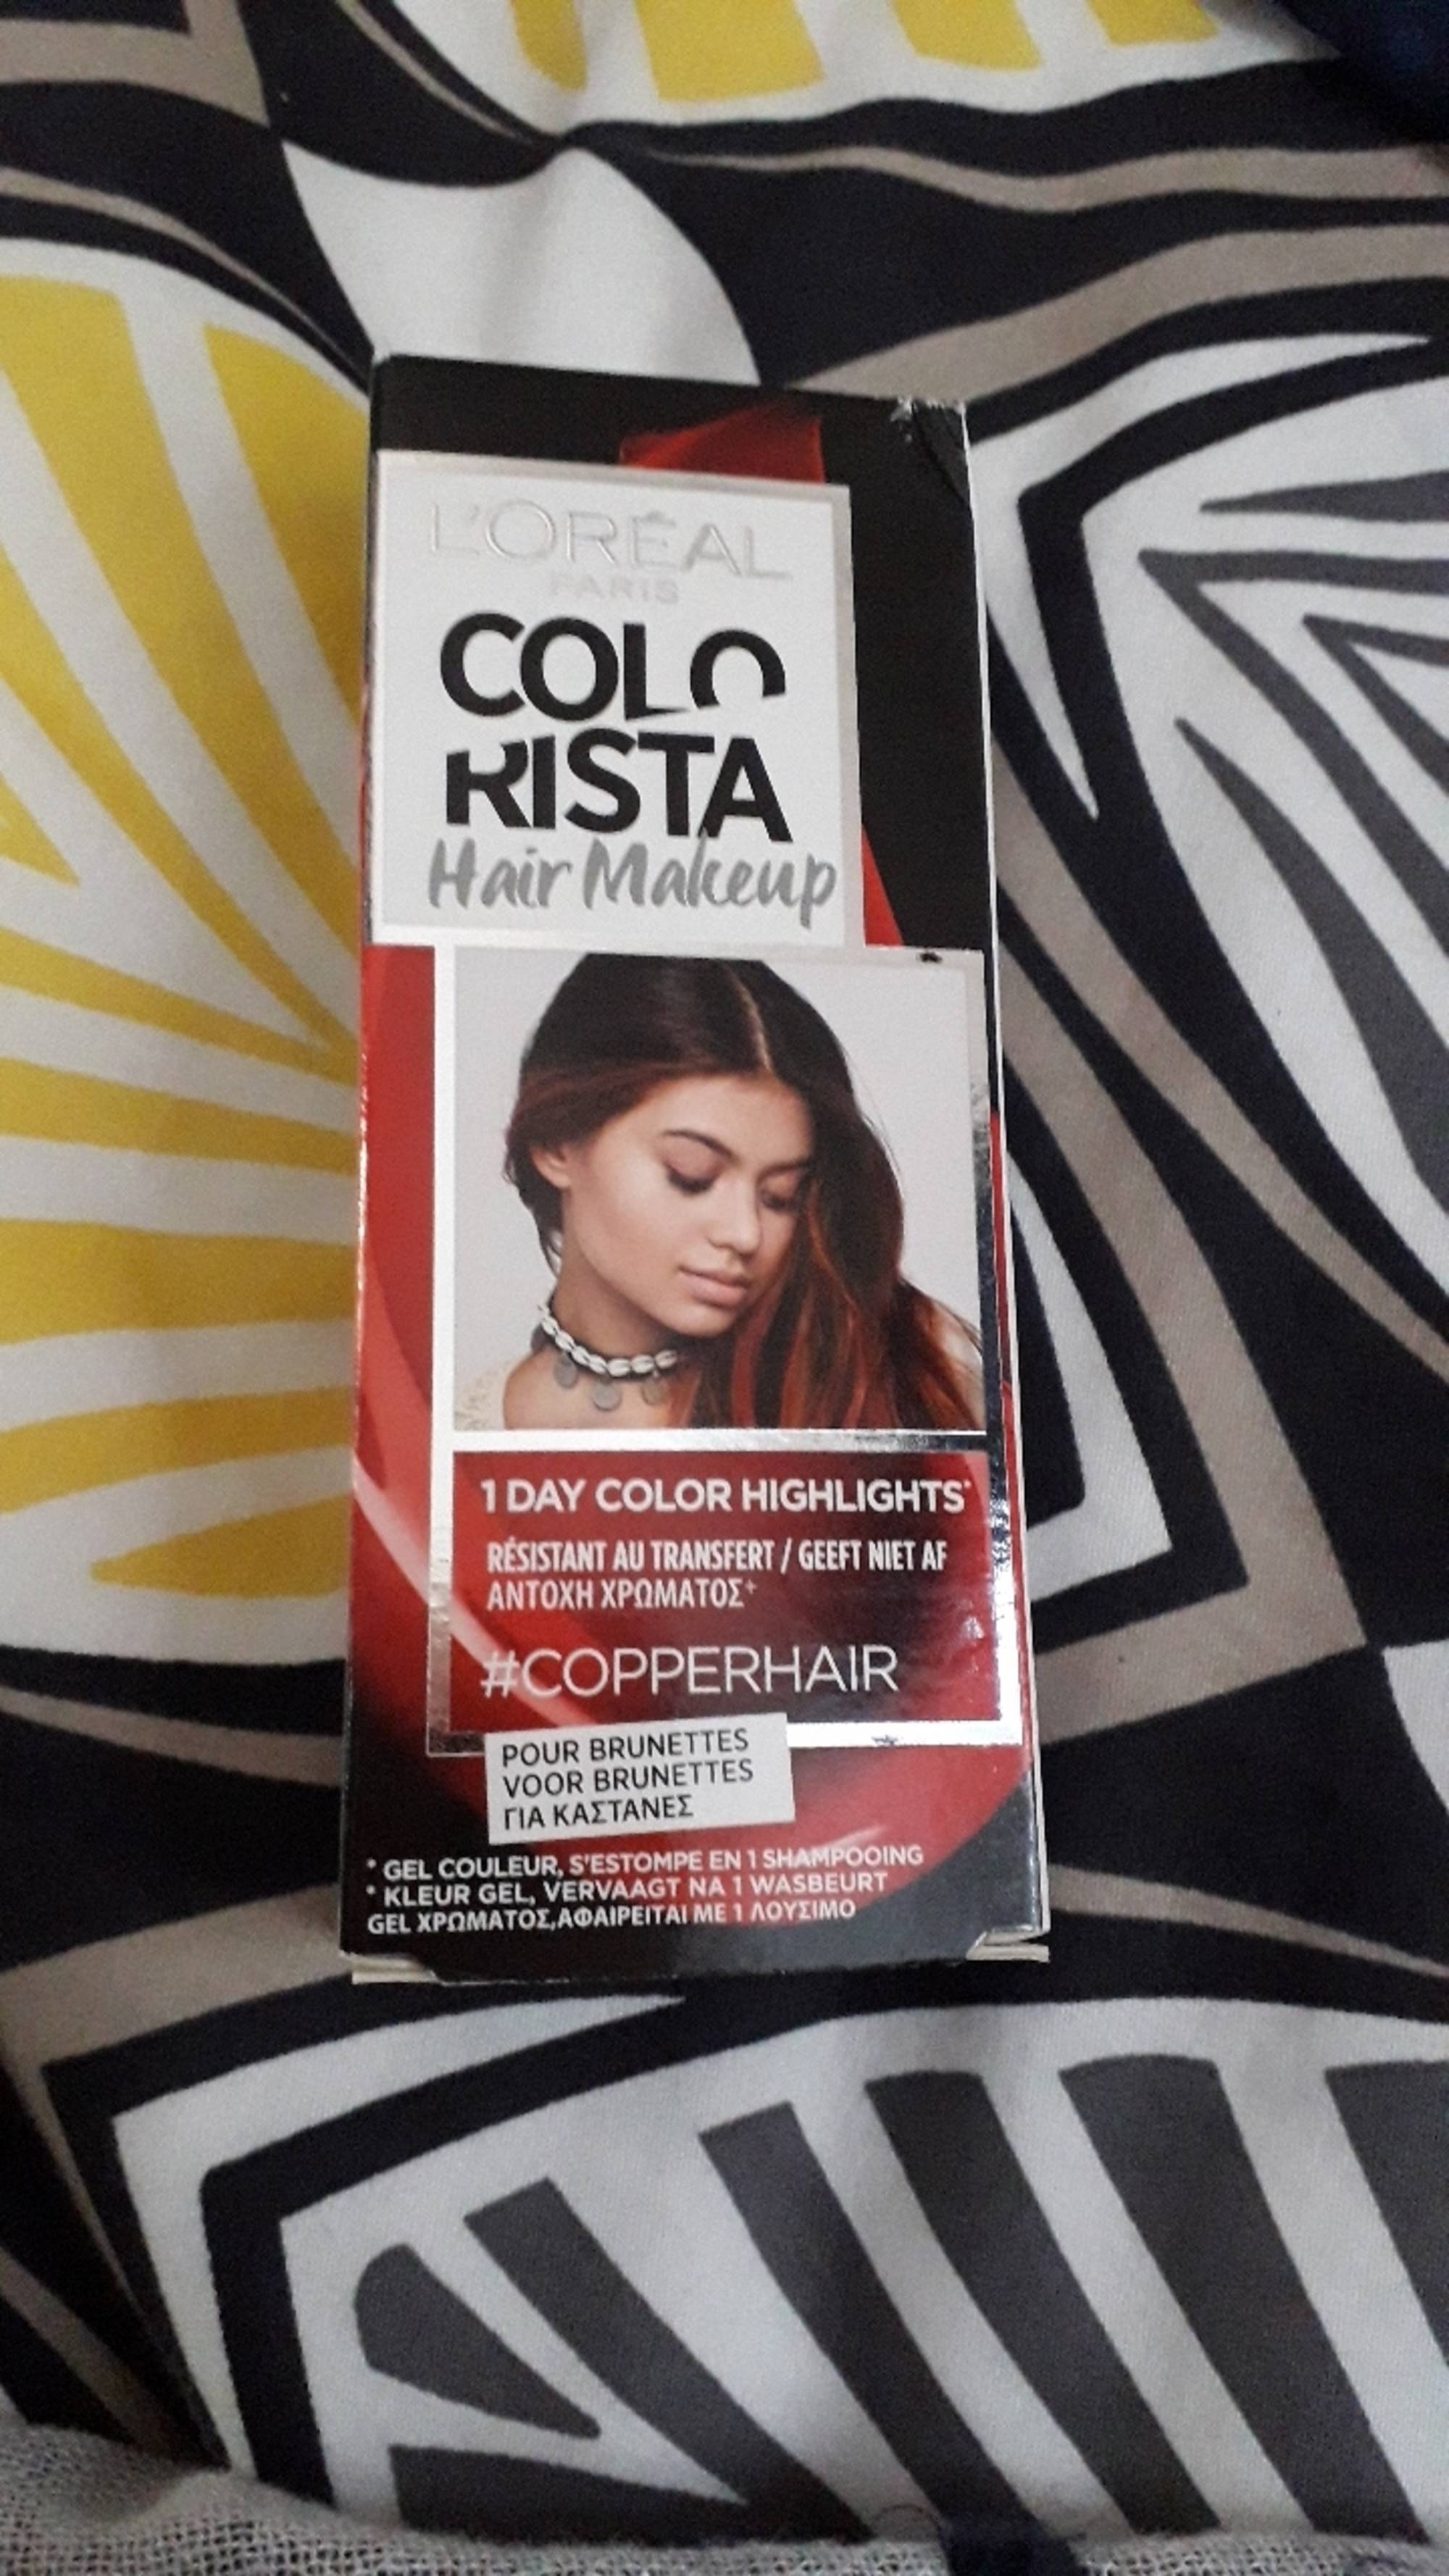 L'ORÉAL PARIS - Colorista #copperhair - Hair makeup